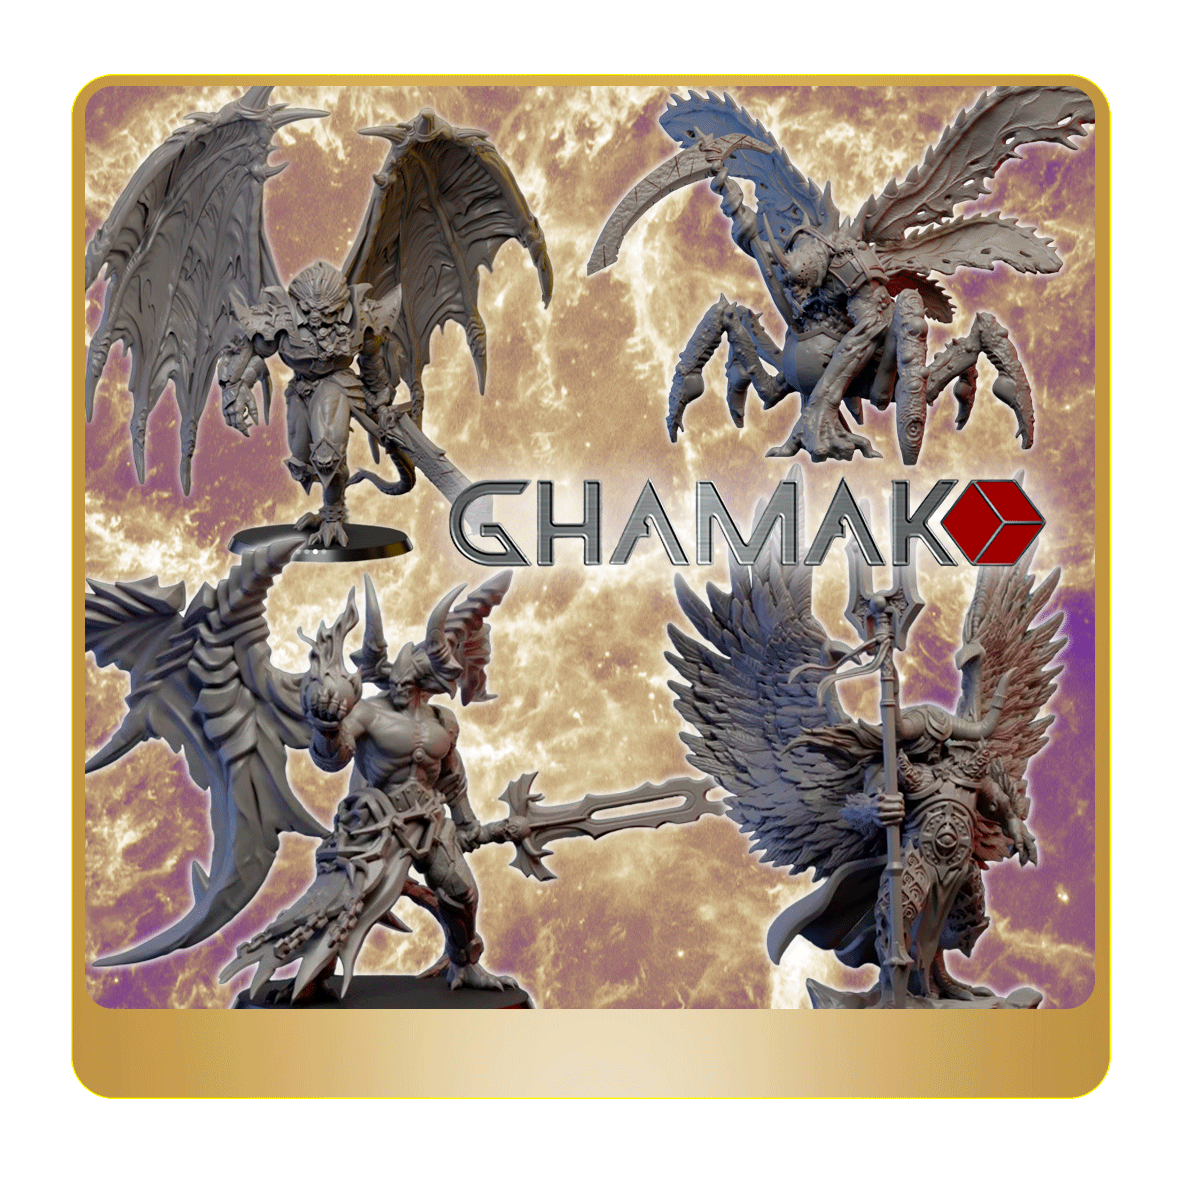 Ghamak-Démons